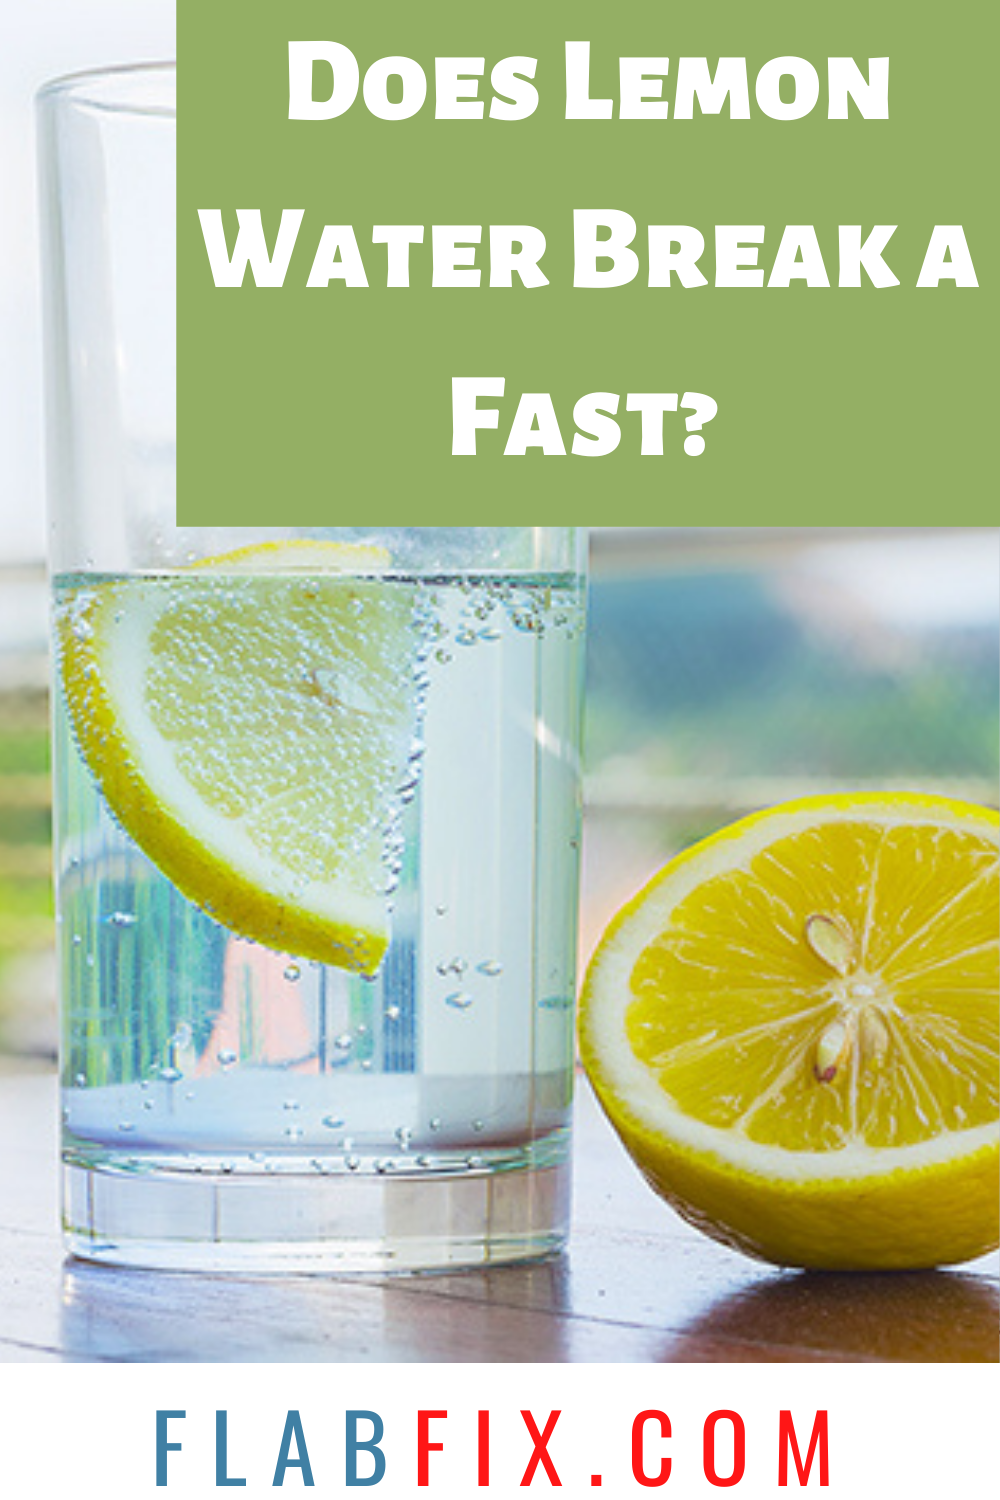 Does Lemon Water Break a Fast?